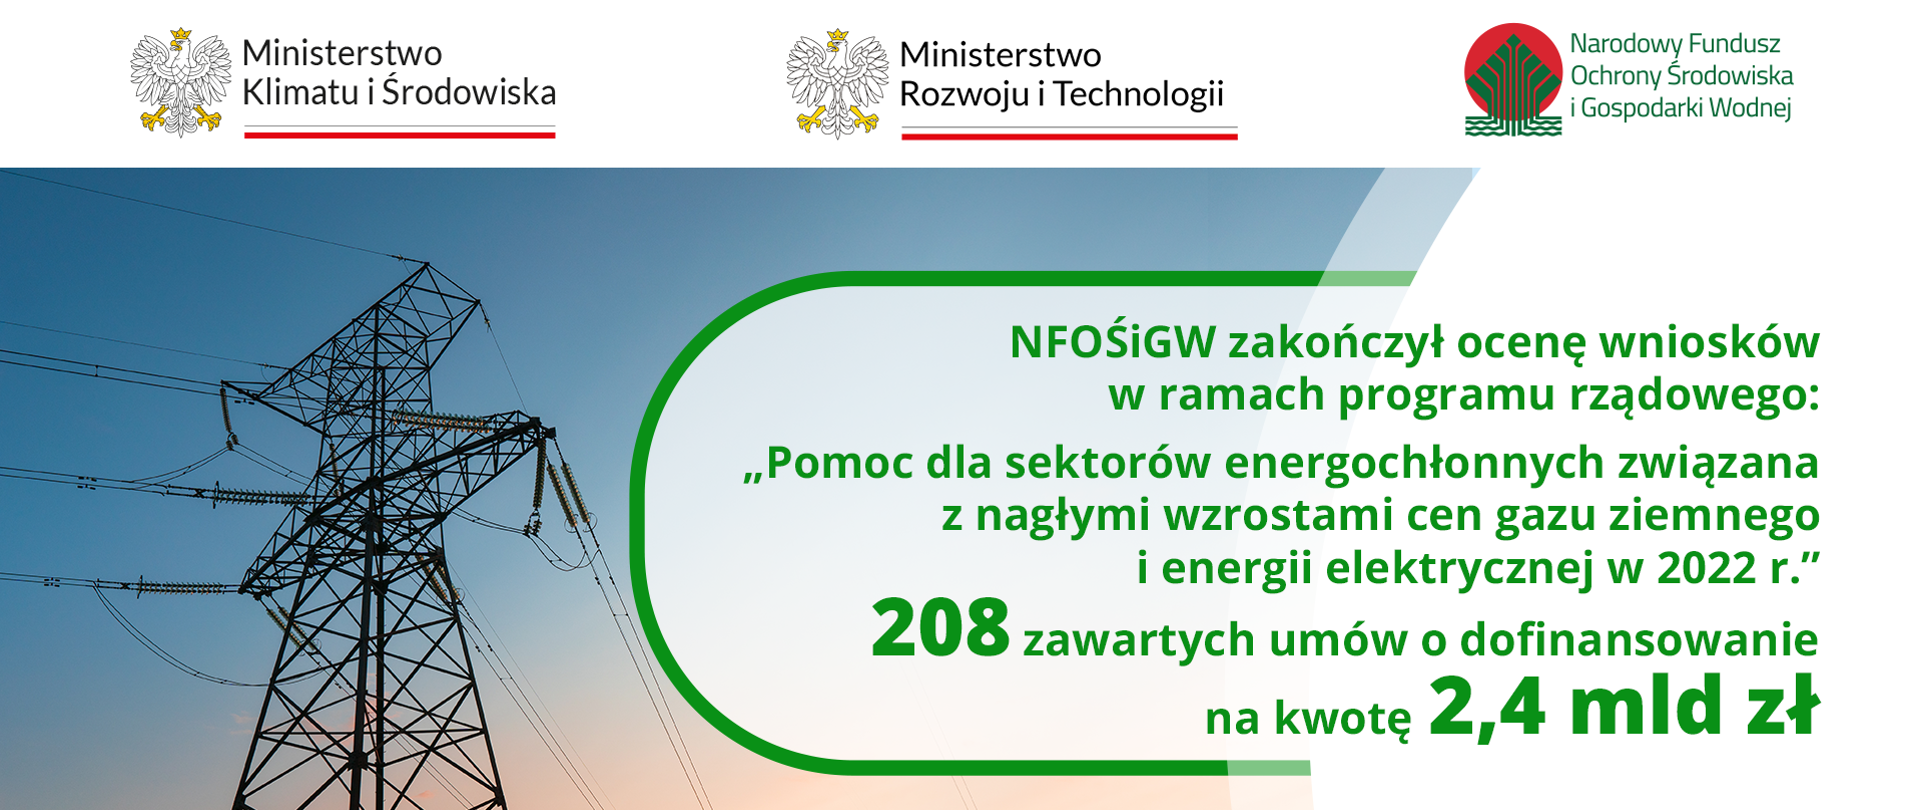 Grafika z informacją o zakończeniu oceny wniosków w ramach programu pomocy dla sektorów energochłonnych - zawarto 208 umów o dofinansowanie na kwotę 2,4 miliarda złotych 